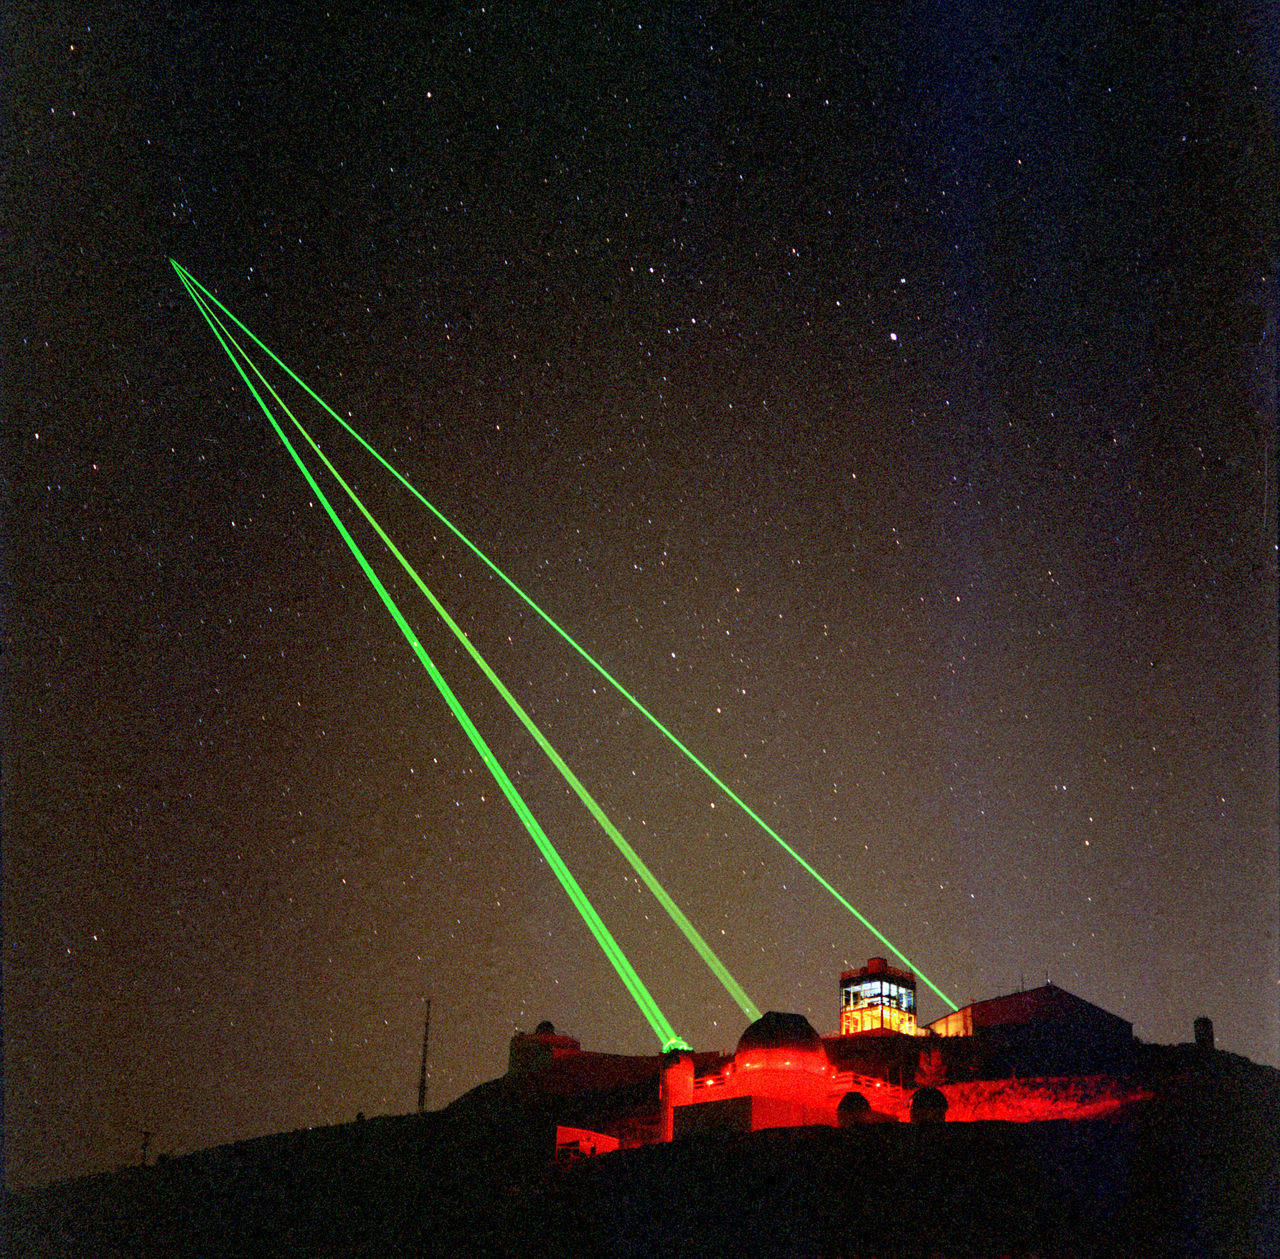 科学网—激光雷达点云配准—《激光与光电子学进展》封面故事 - 松迪科研绘图的博文